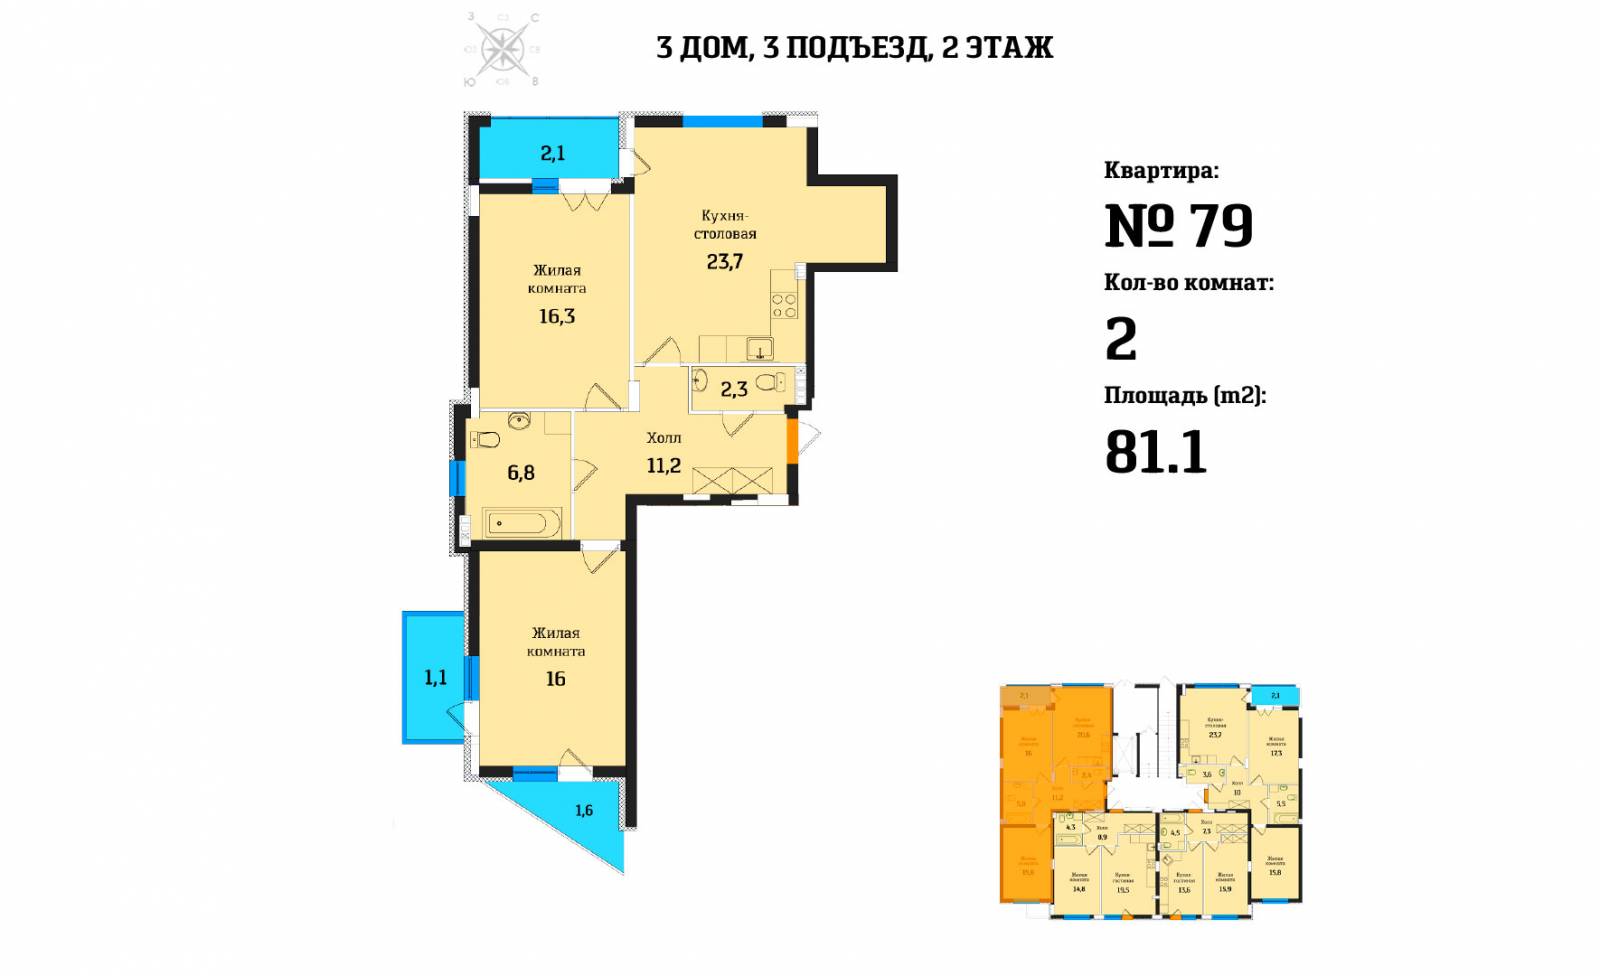 Plans ЖК «Цветной Бульвар», дом №3